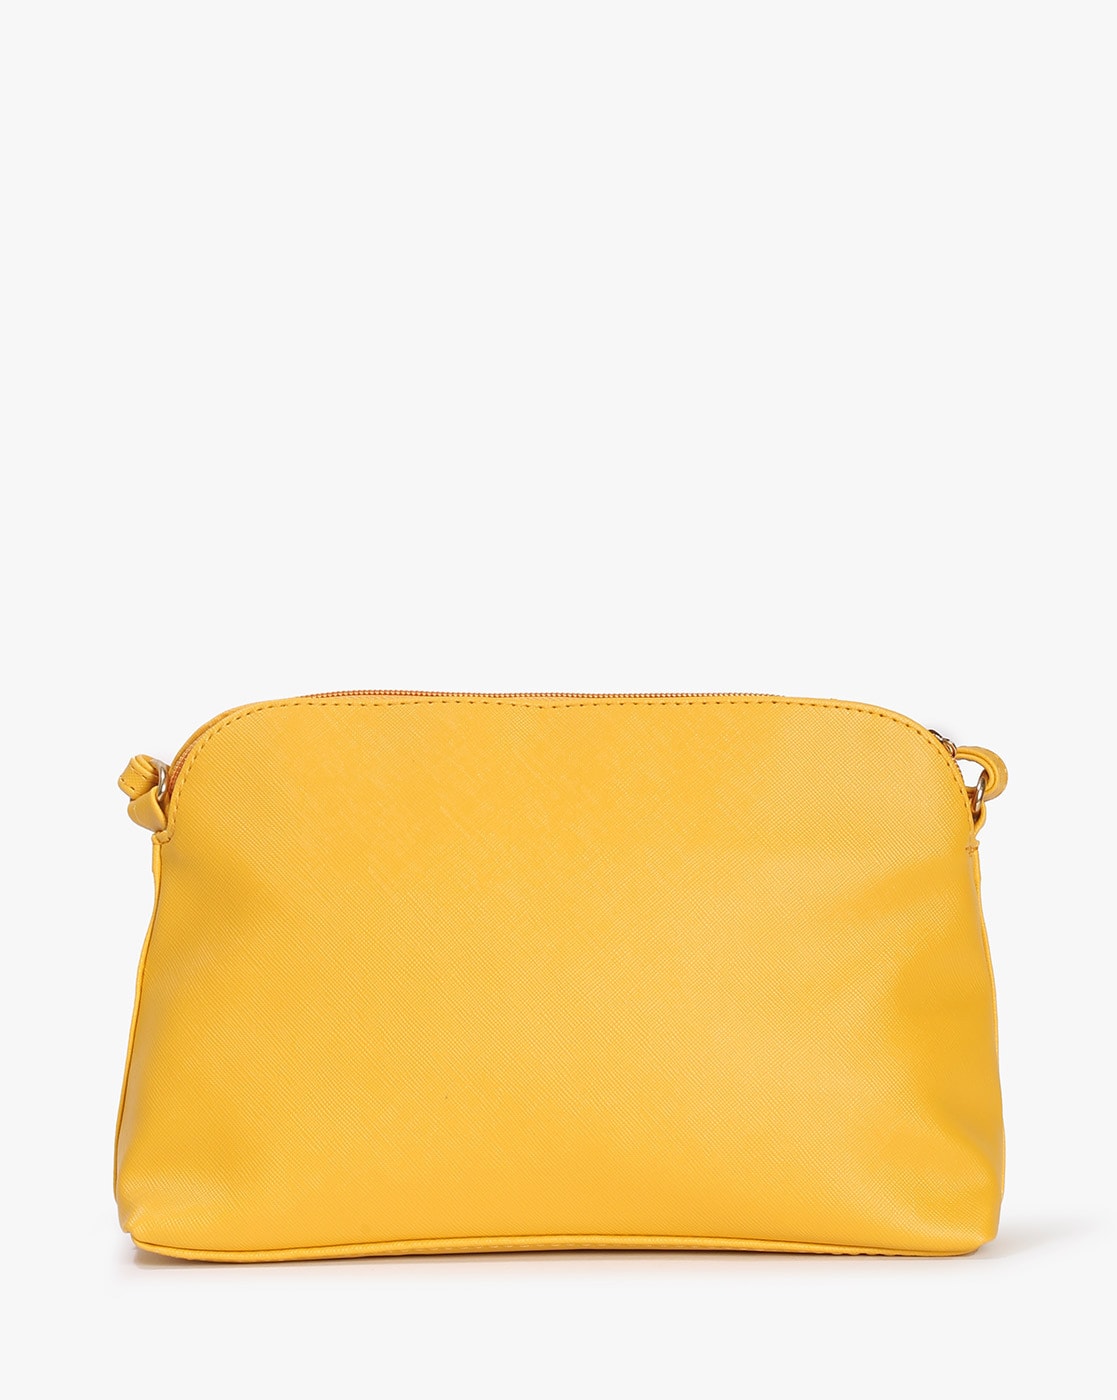 FOREVER 21 Yellow Shoulder Bags | Mercari